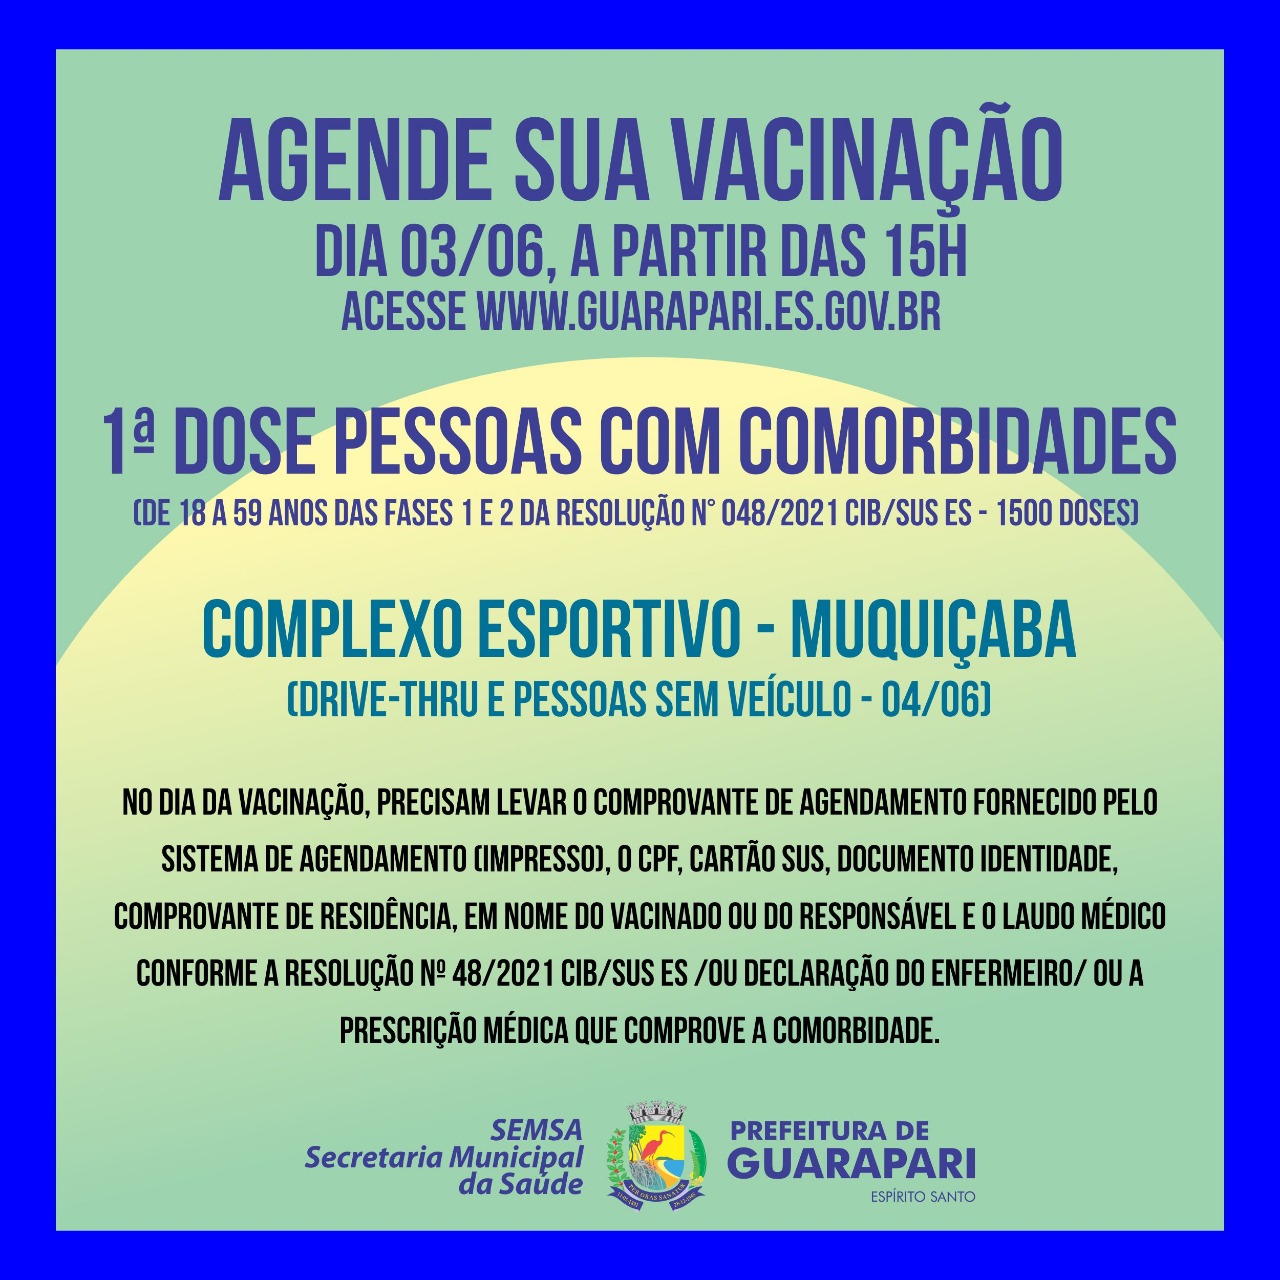 Vacinação contra Covid-19: Prefeitura de Guarapari abre novo agendamento para pessoas com comorbidades nesta quinta 